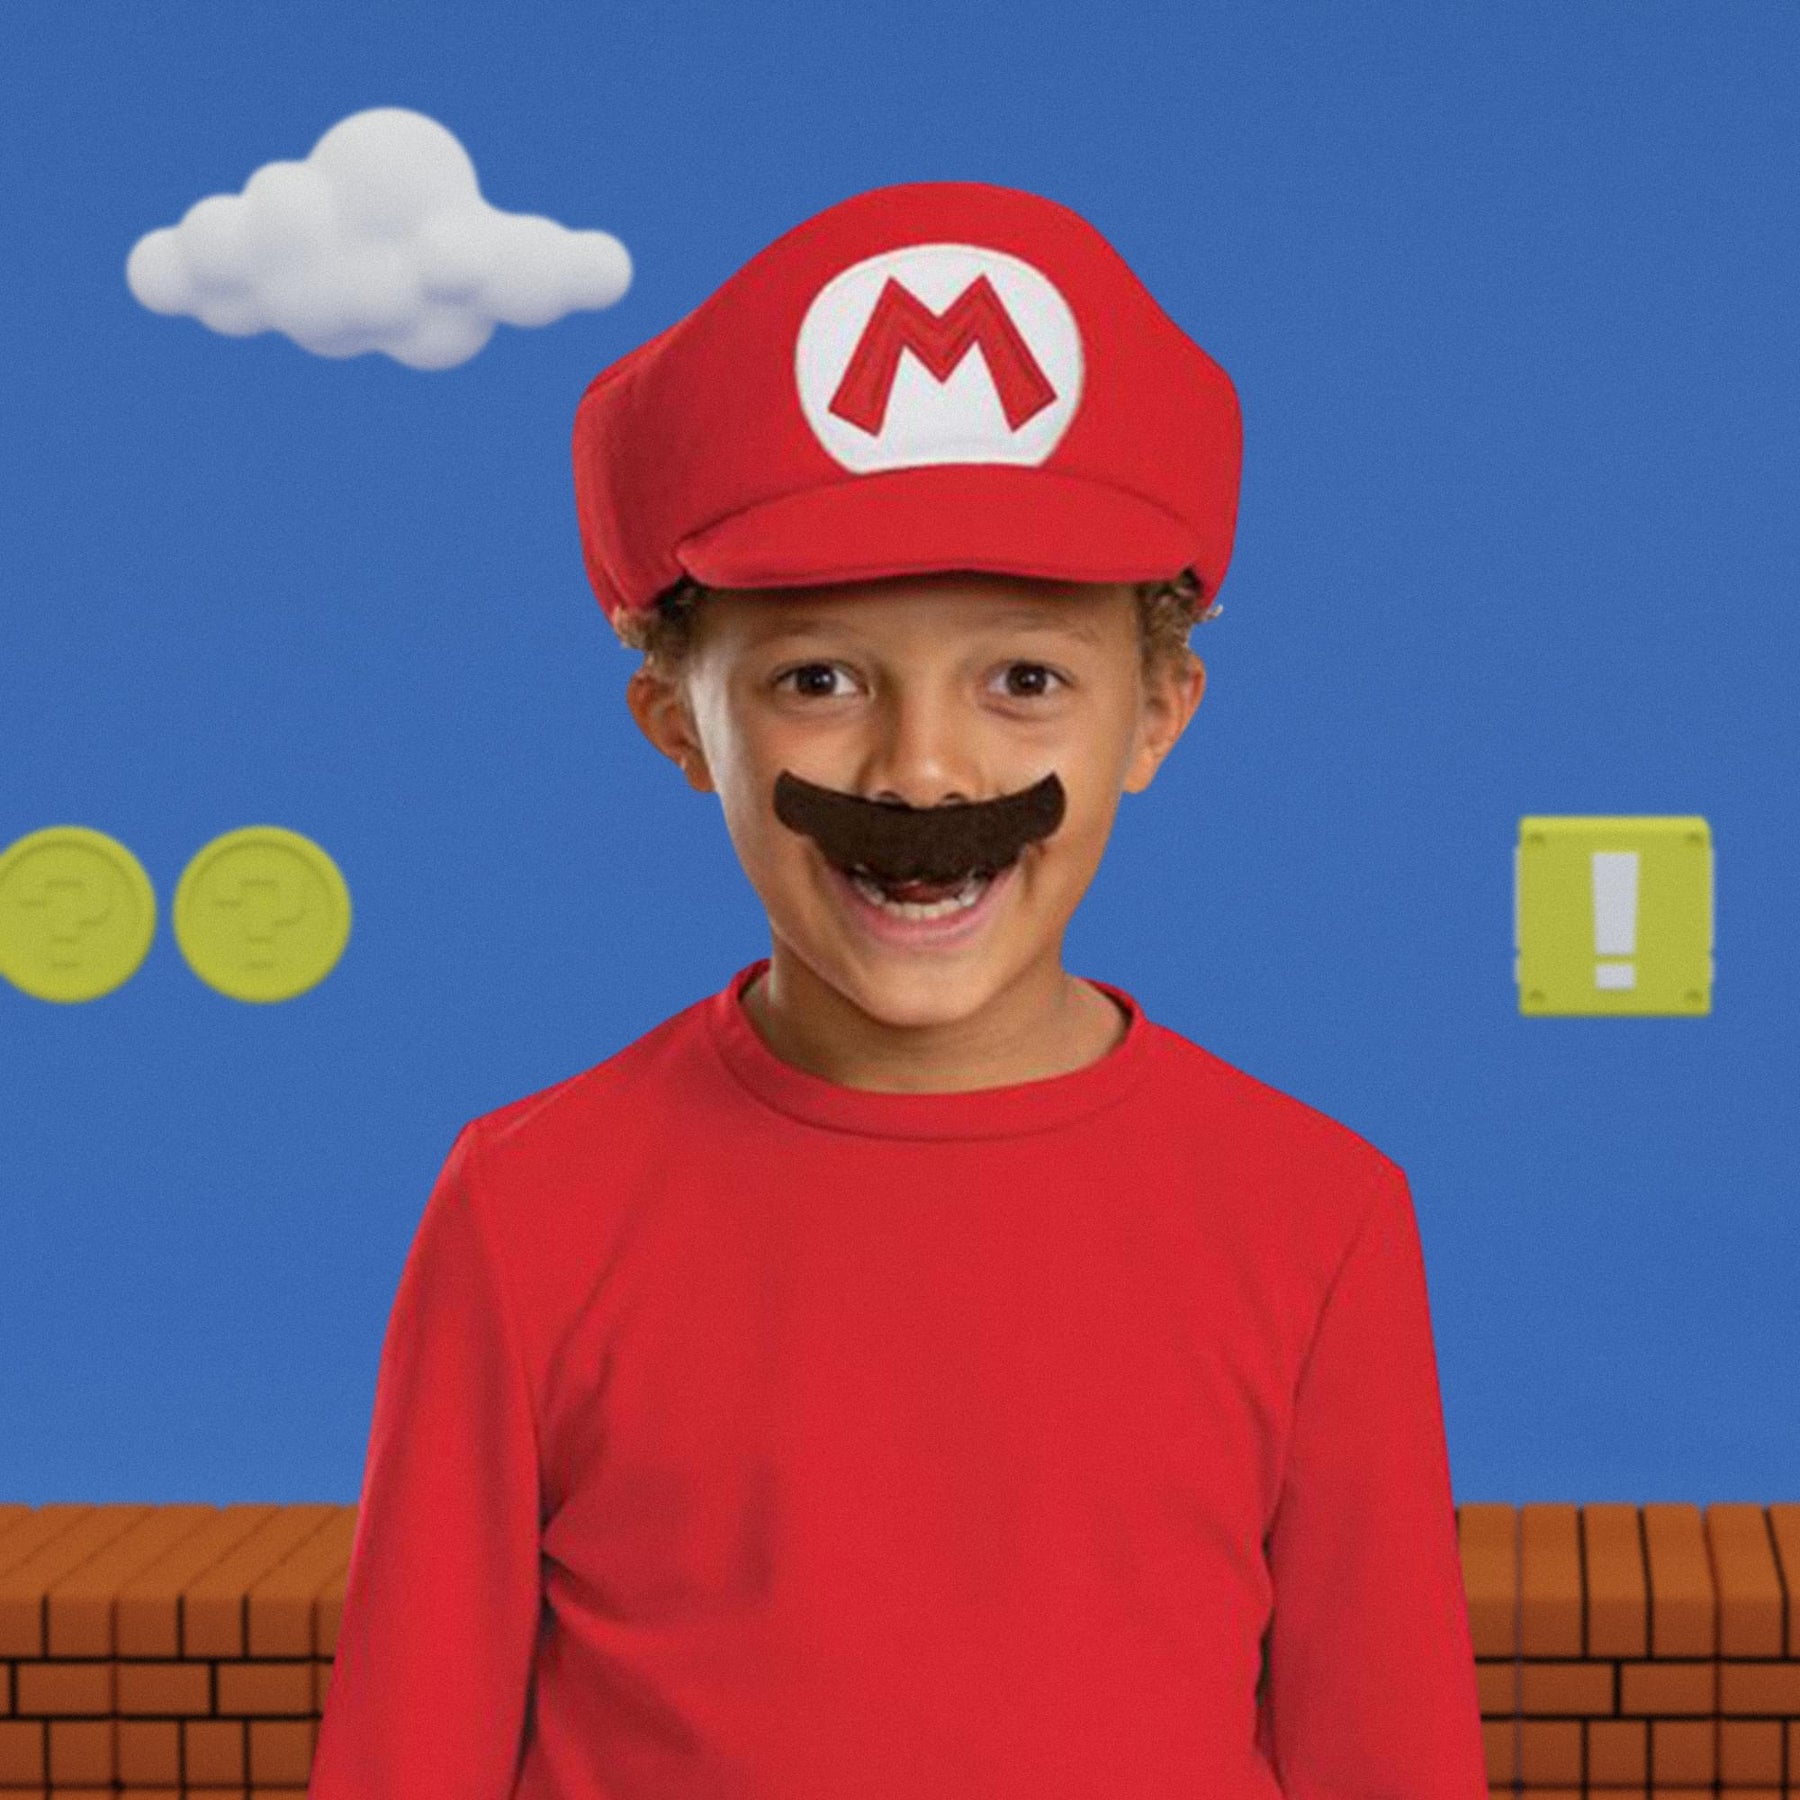 Super Mario Bros. Mario Hat and Mustache Child Costume Kit